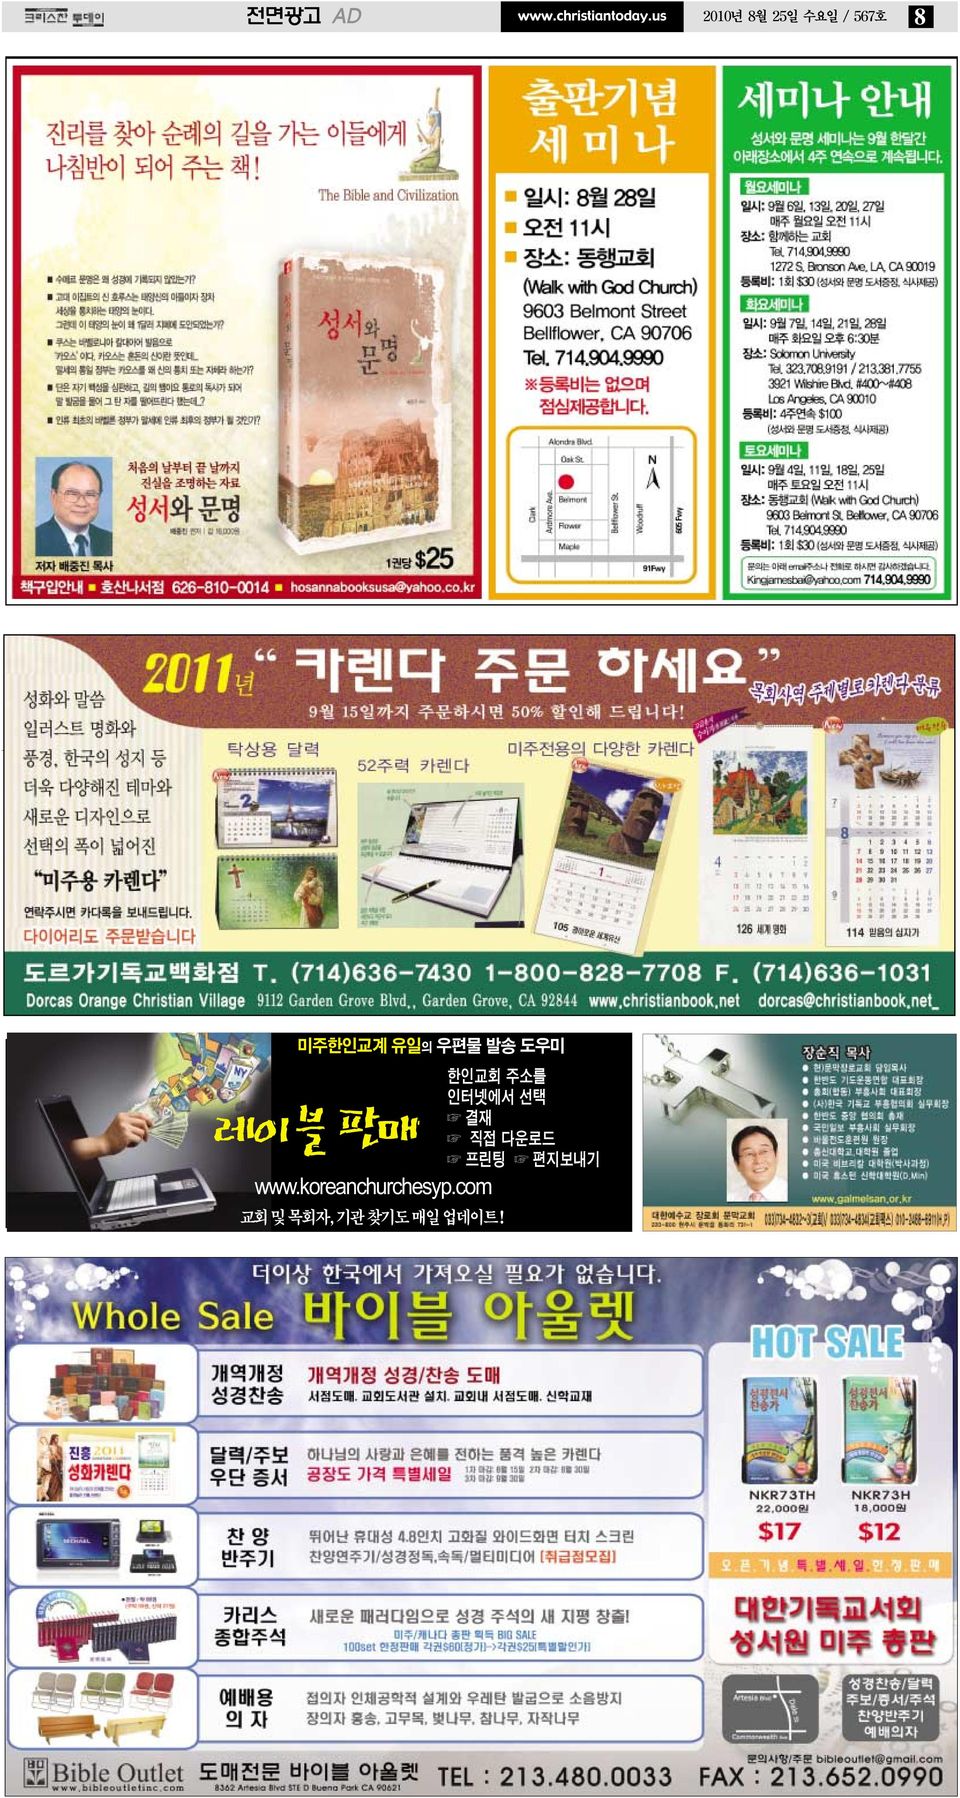 발송 도우미 레이블 판매 www.koreanchurchesyp.